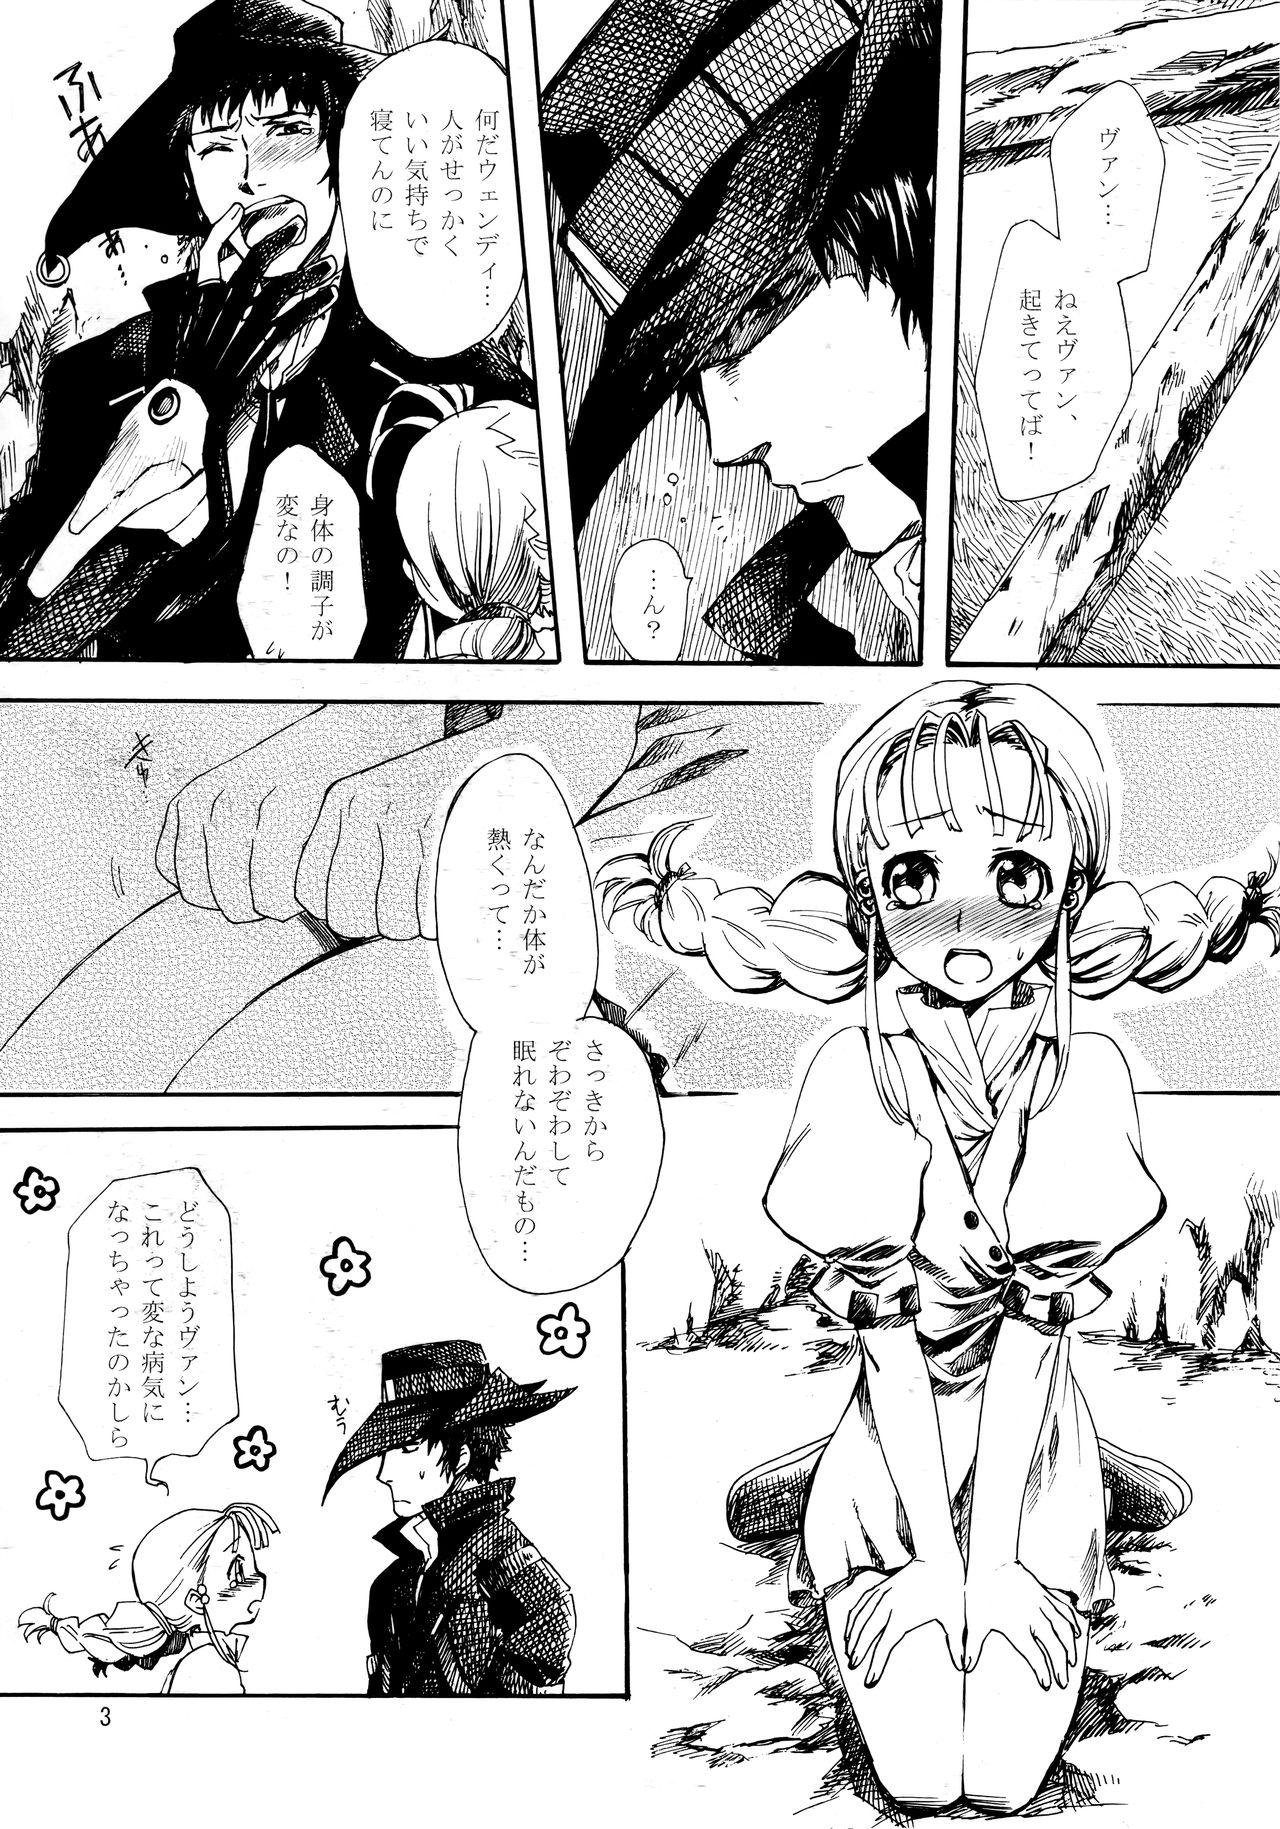 Cream Inugoya no Sekai vol.09 - Gun x sword Interracial - Page 2